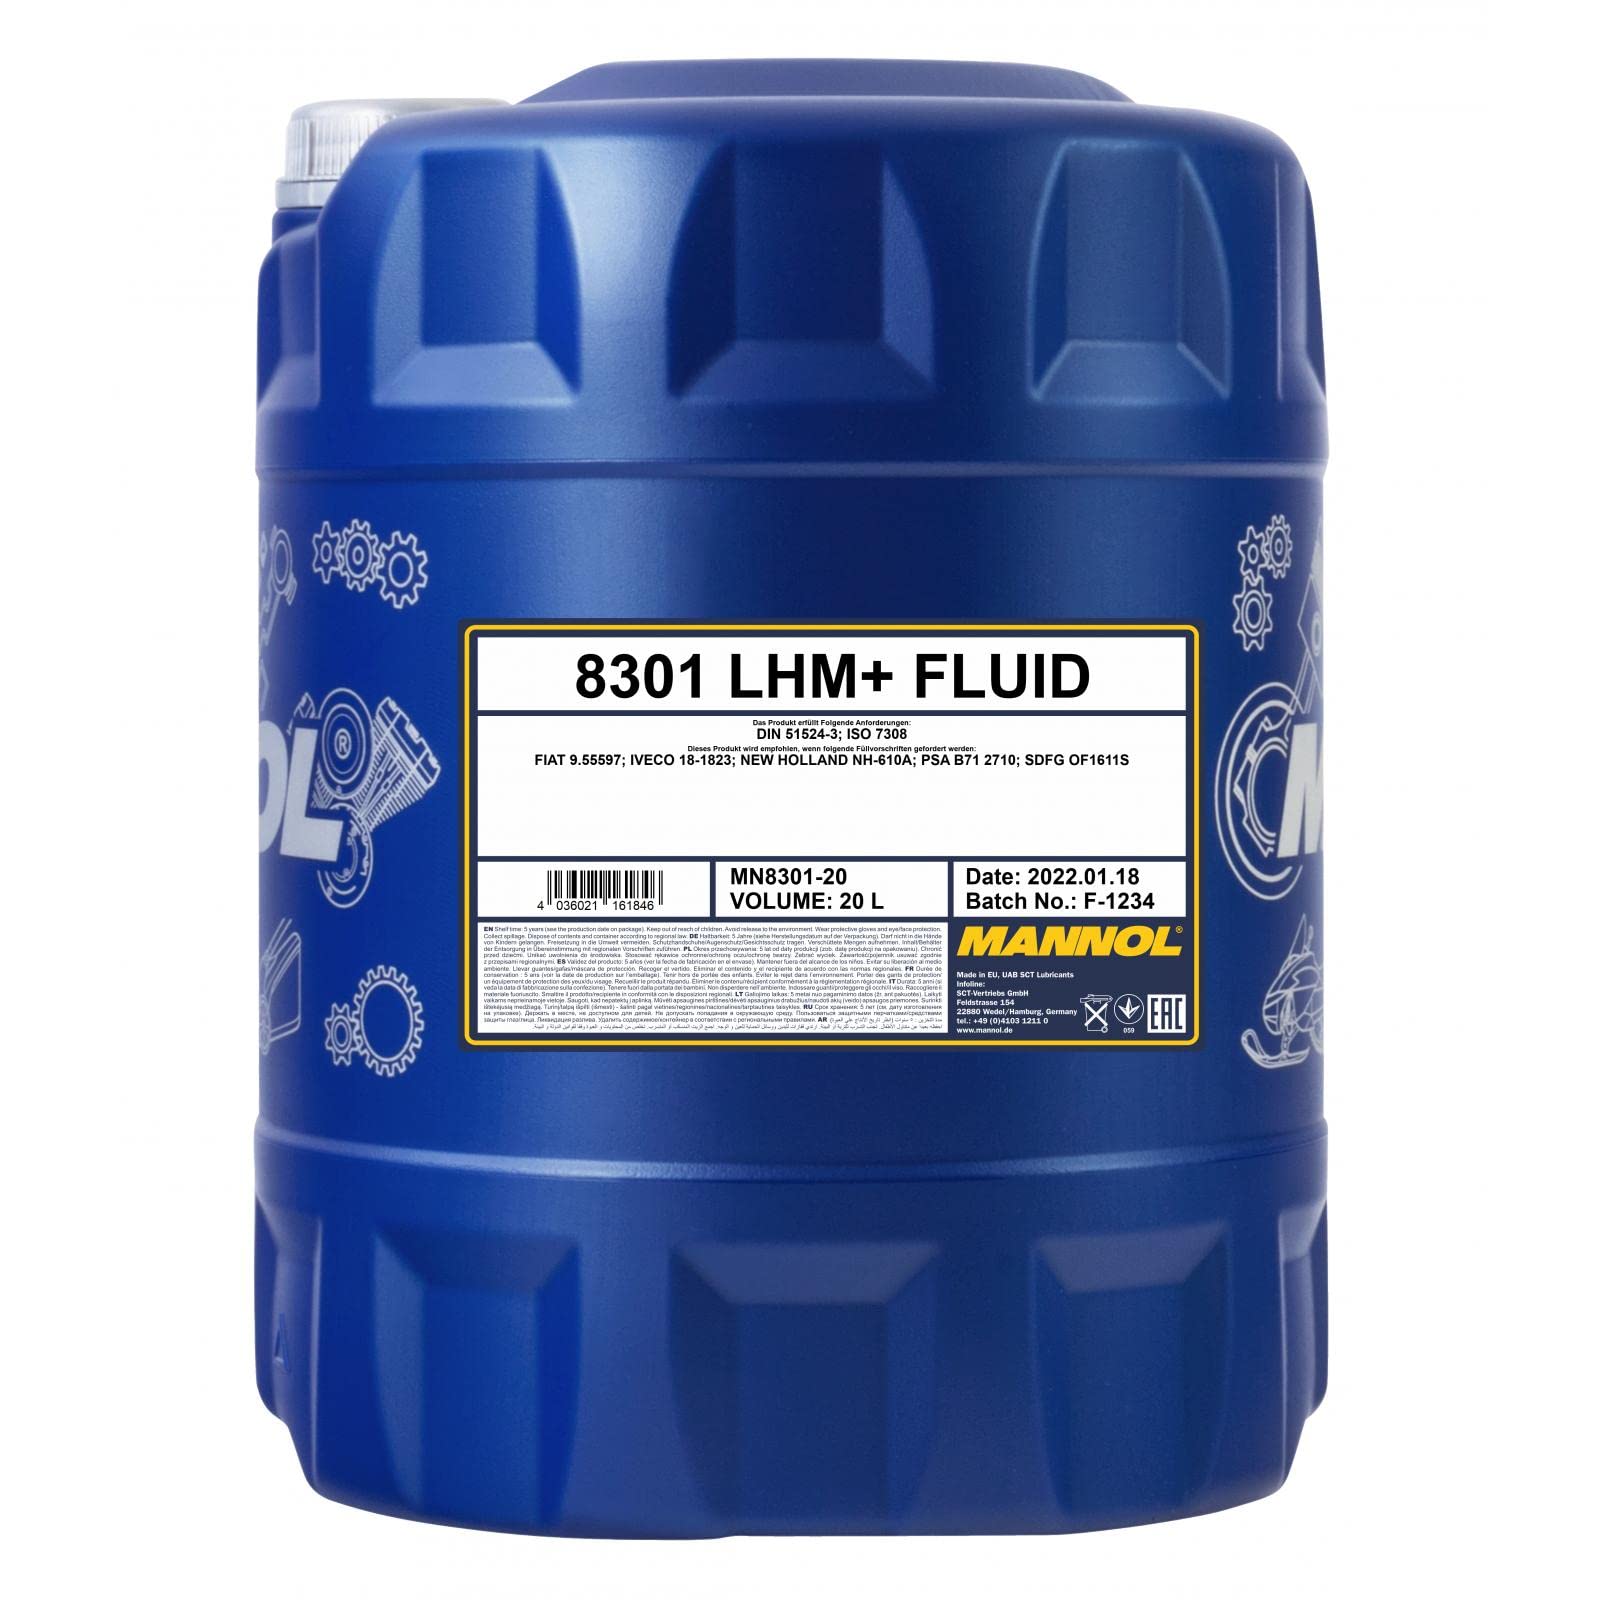 20 Liter Original MANNOL LHM+ Fluid Hydraulik Öl Flüssigkeit DIN 51524.2 von MANNOL